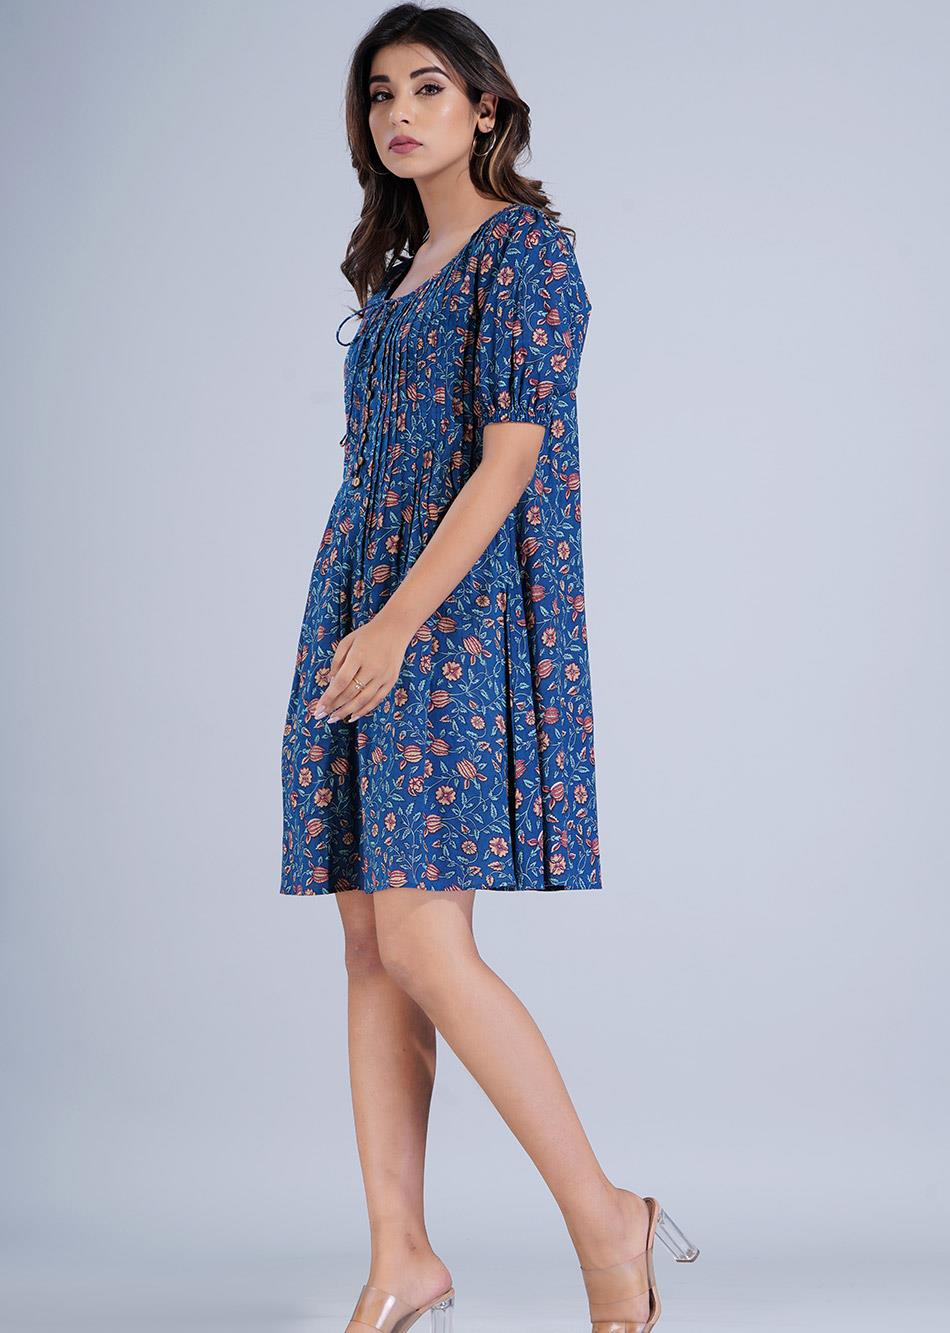 Blue Printed Short Dress By Jovi Fashion